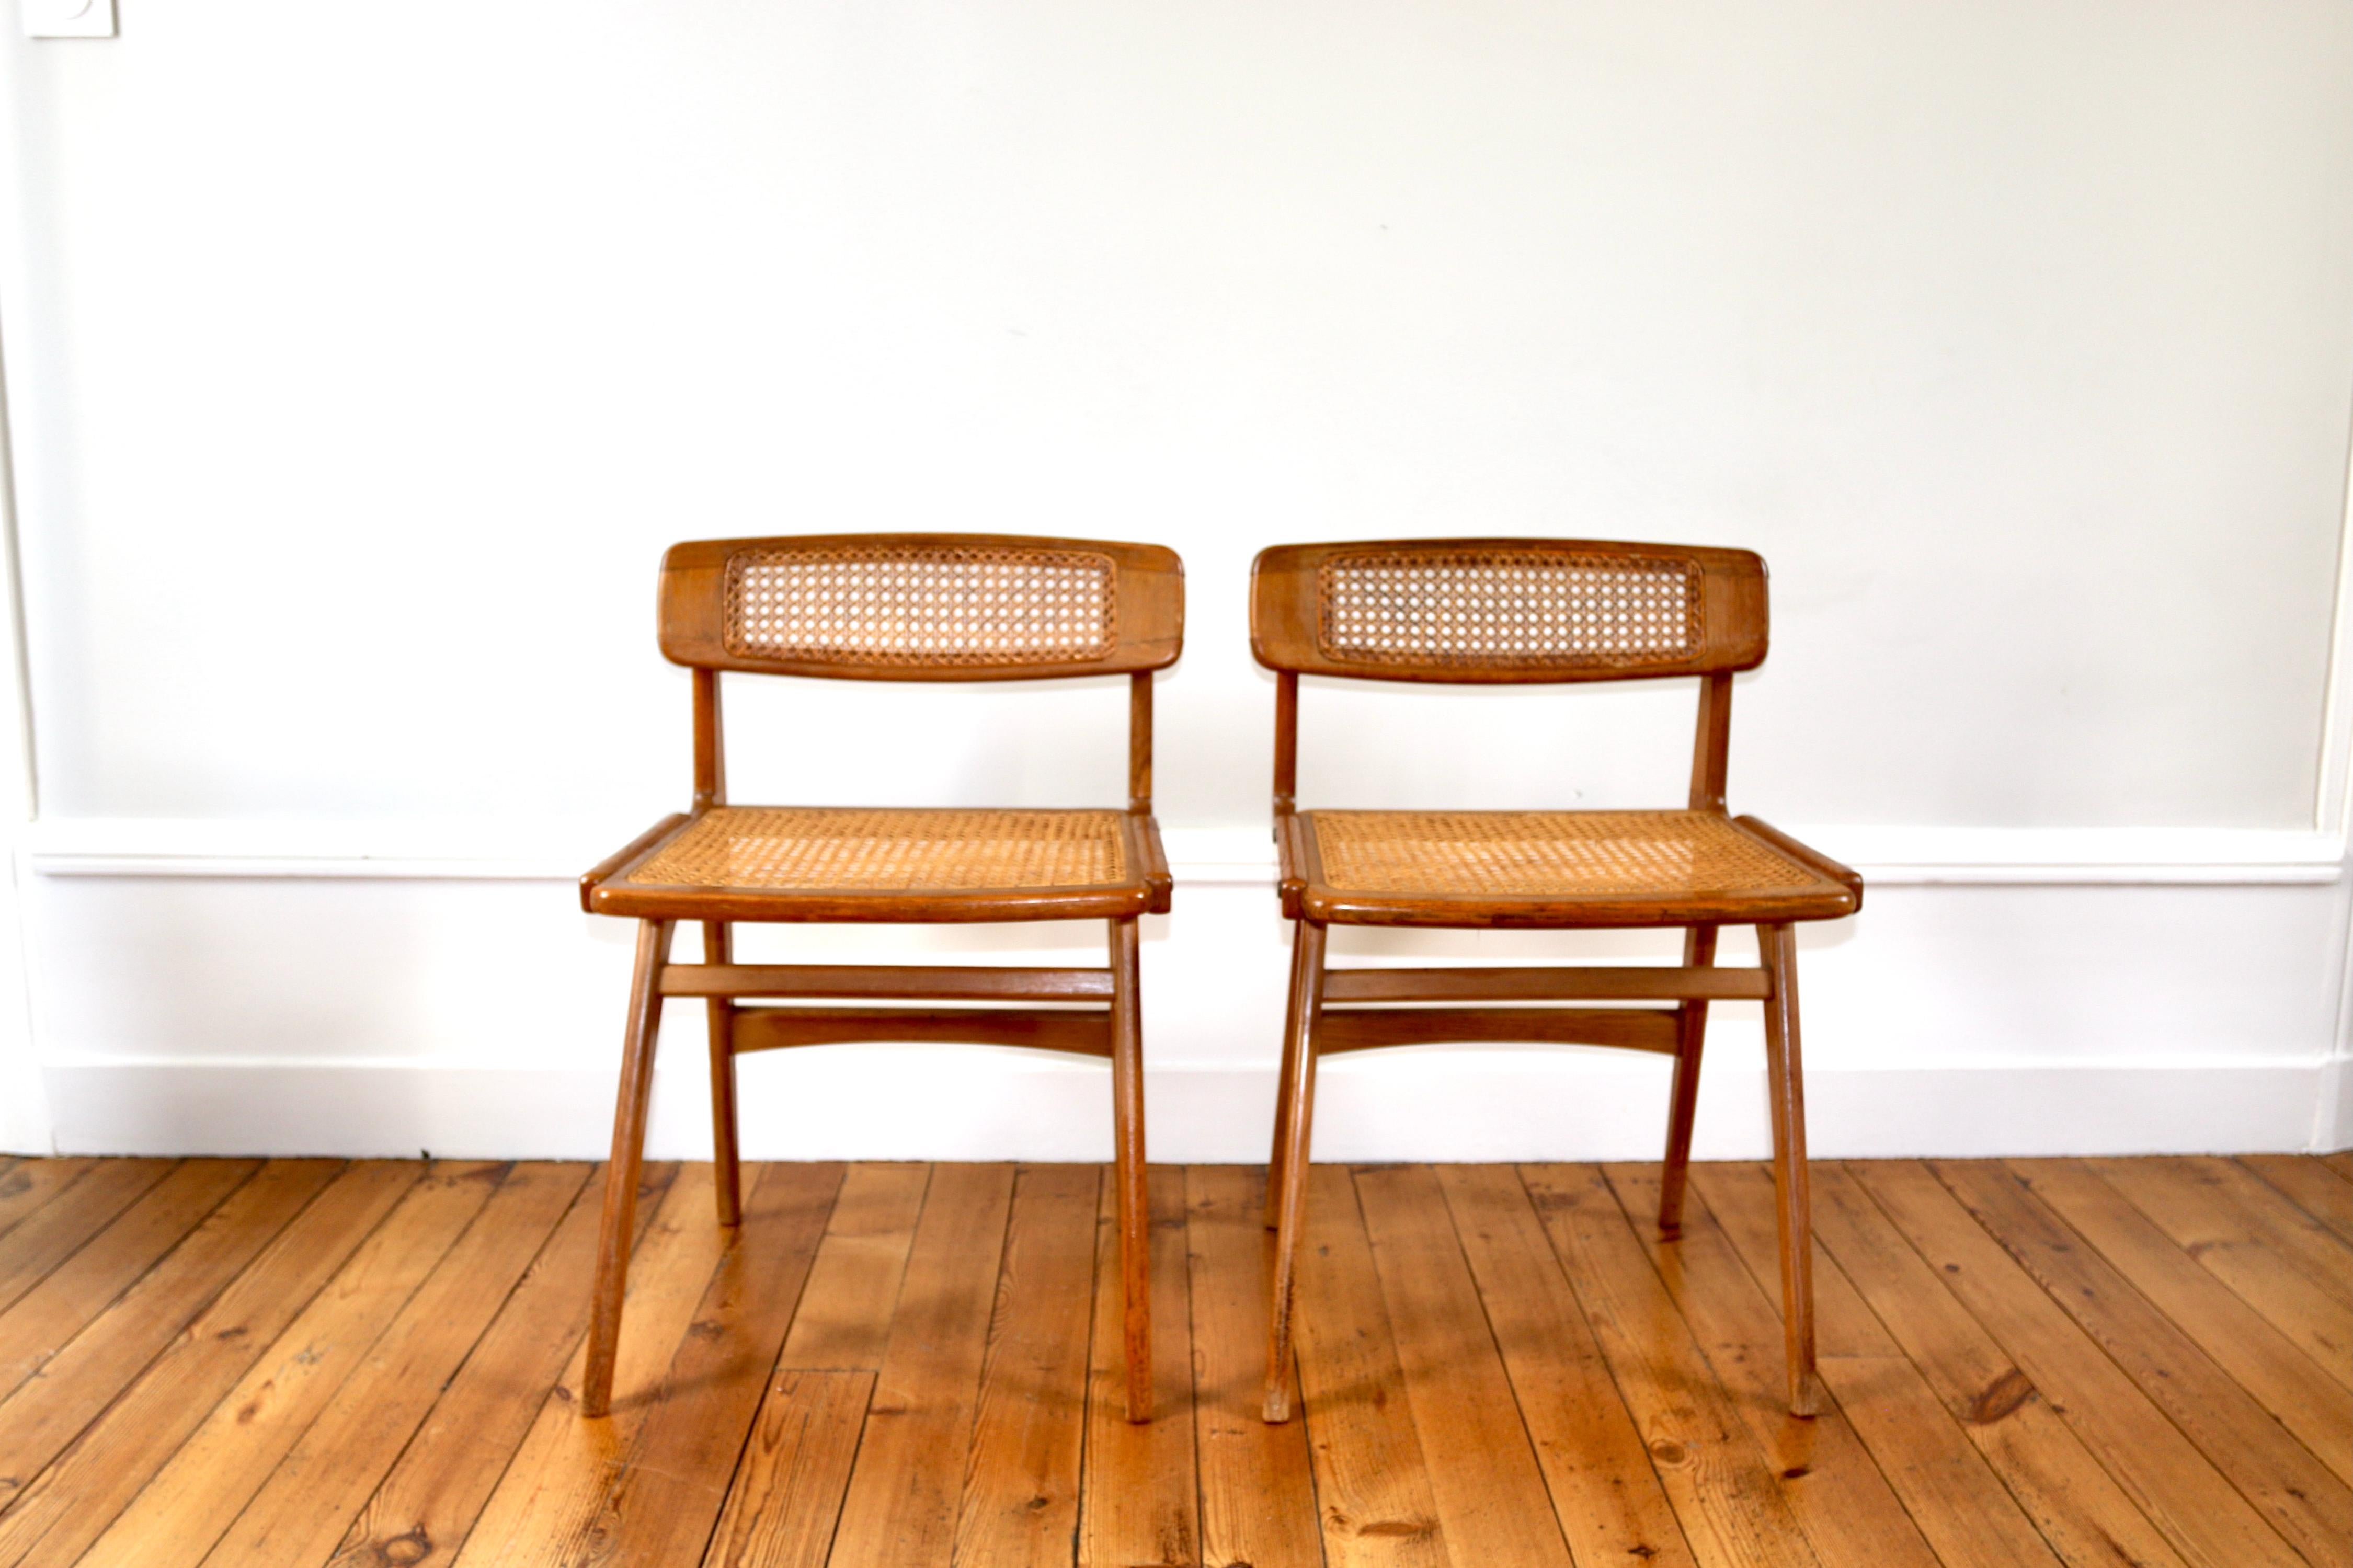 Rare paire de chaises Roger Landault en chêne et cannage
en excellent état vintage
